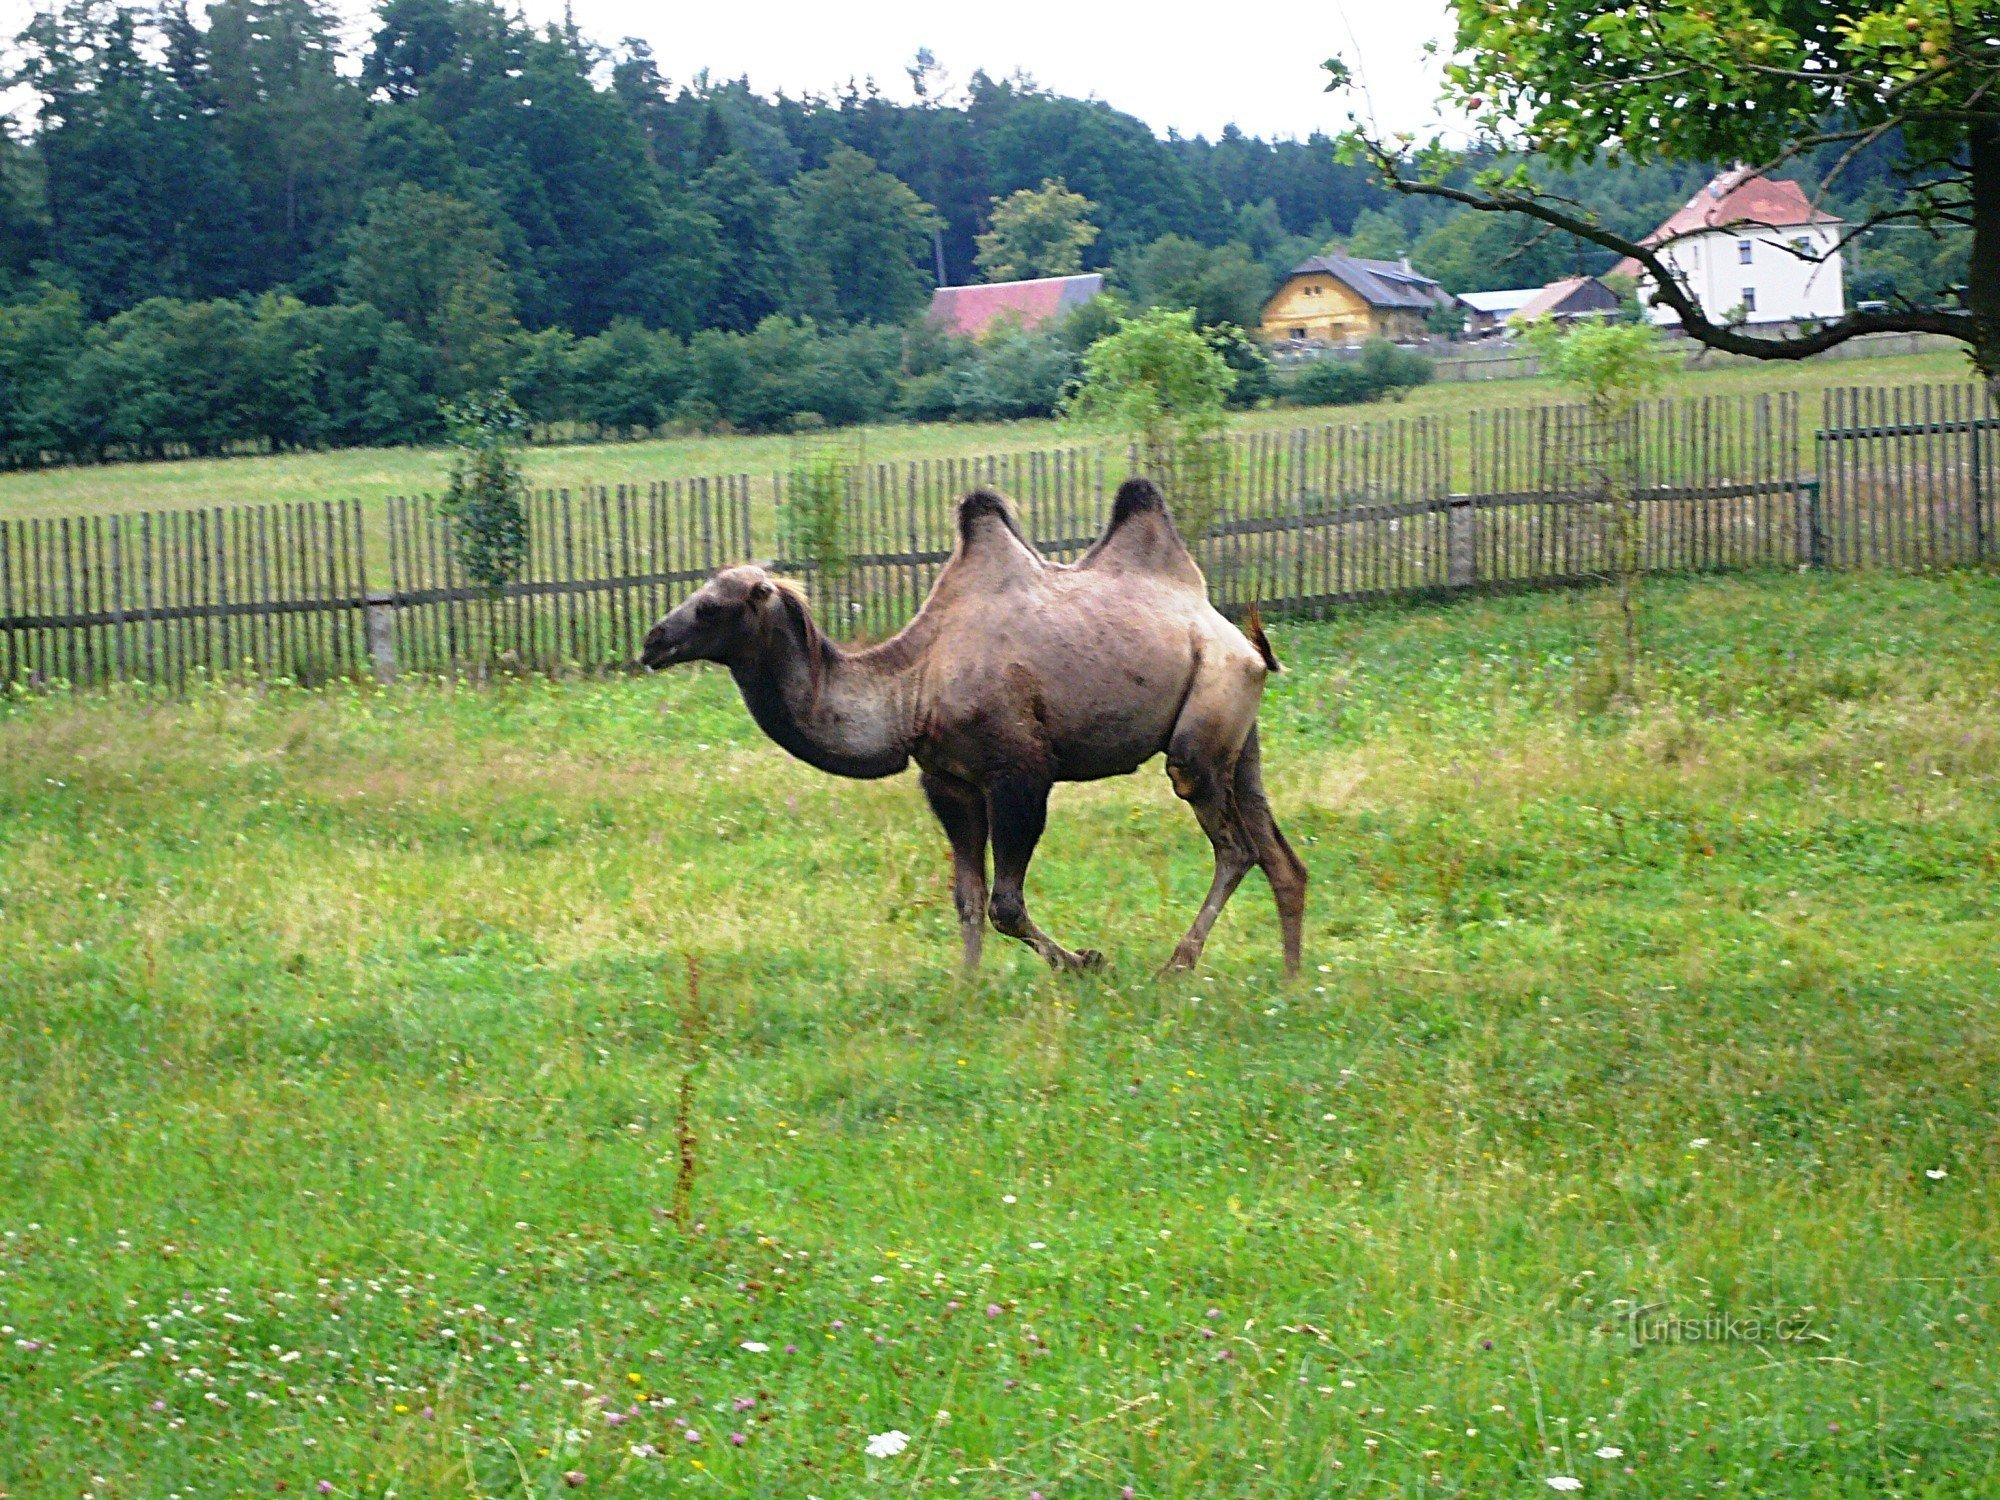 L'inizio dei cammelli in Boemia?